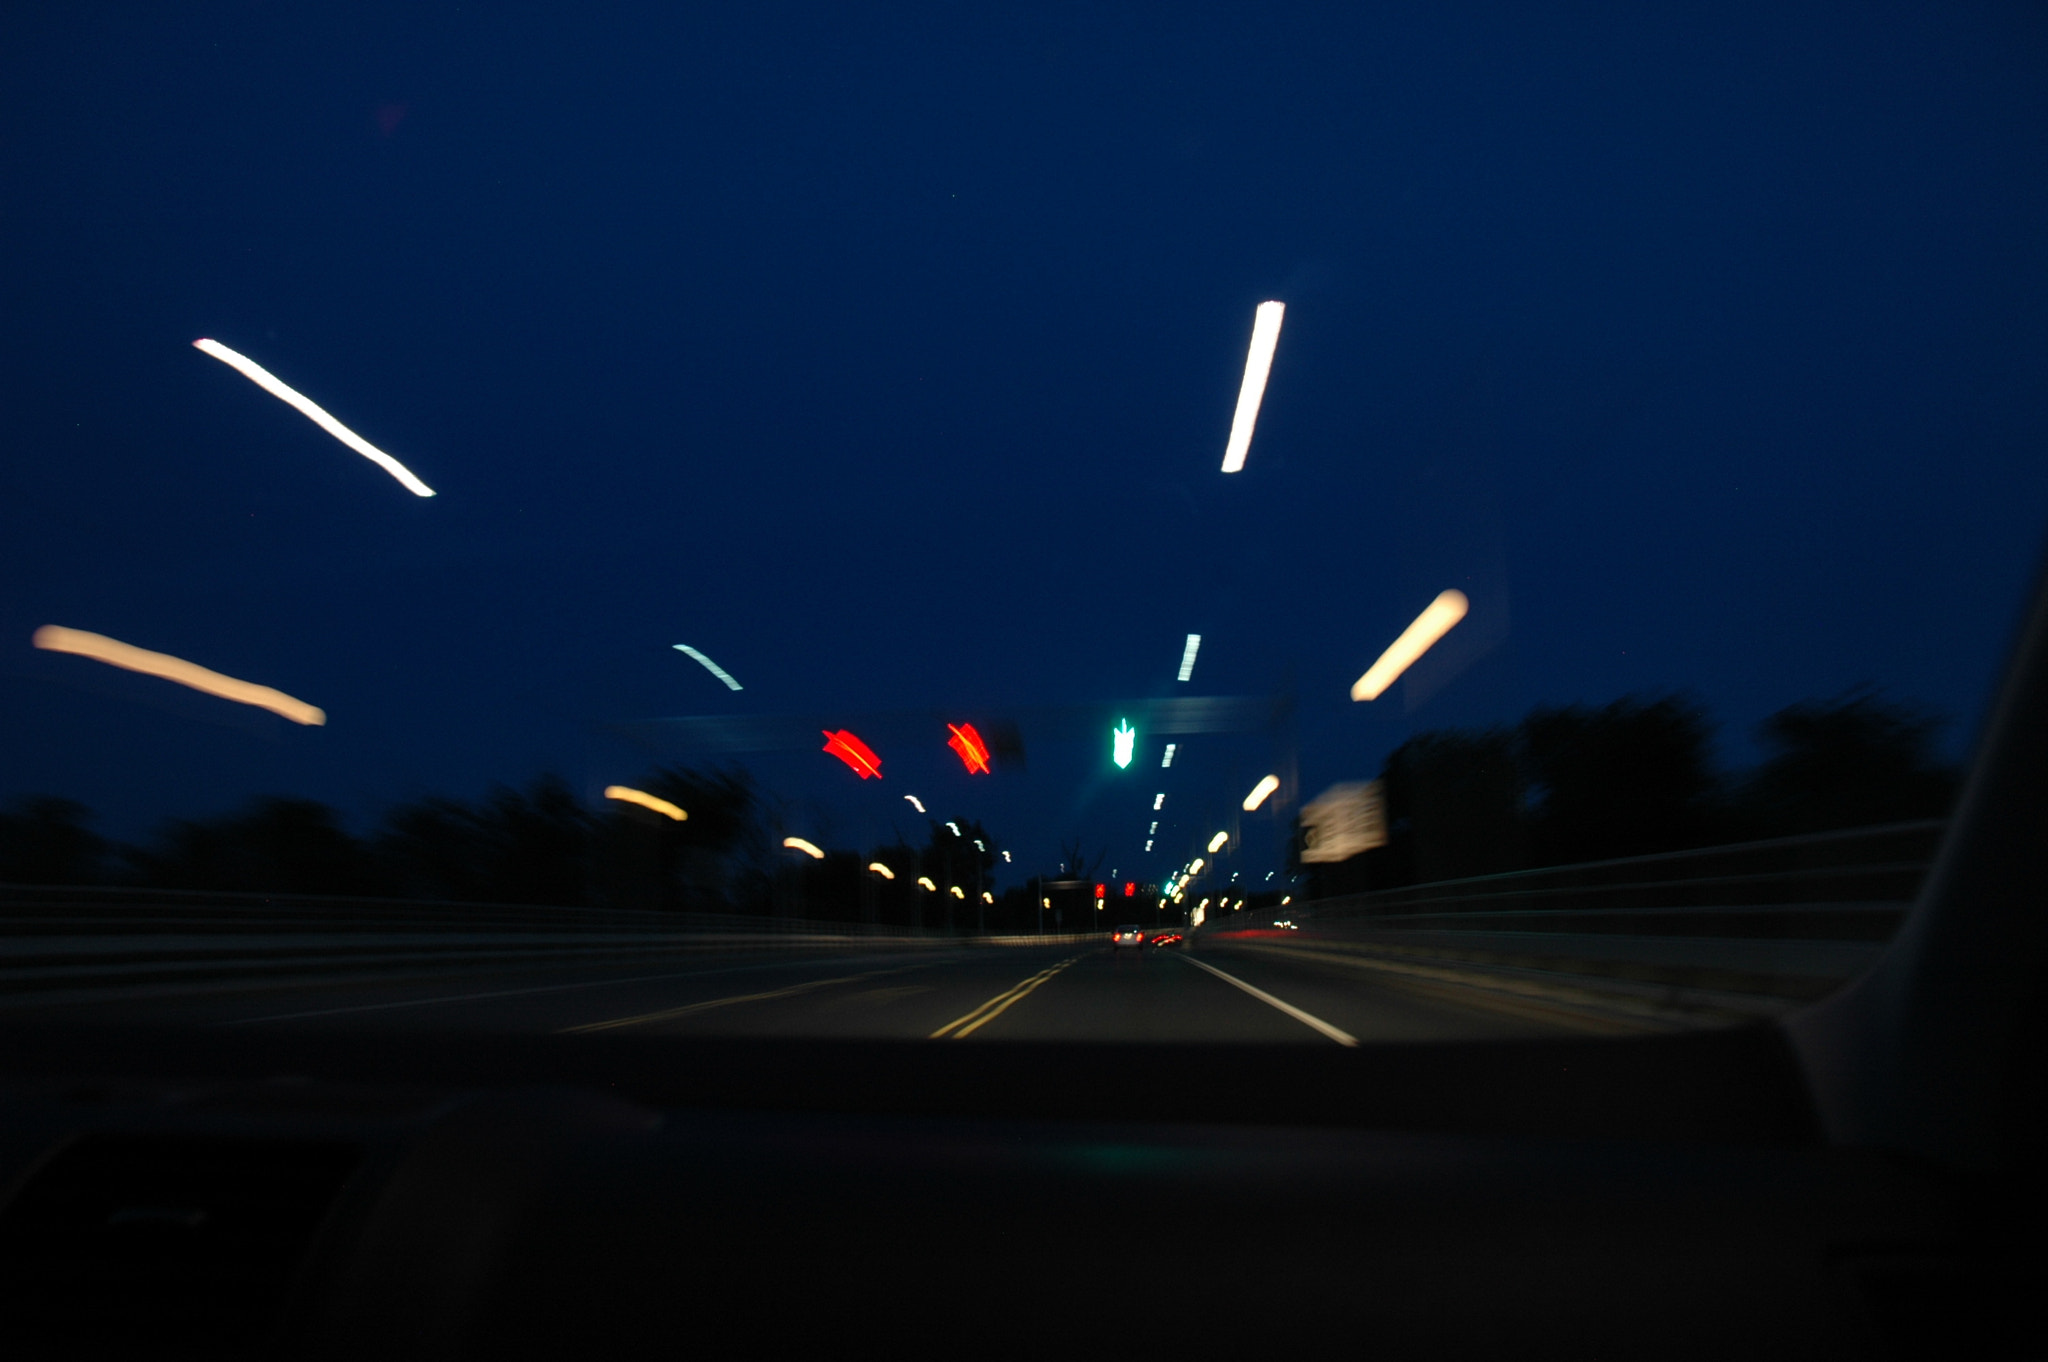 Nikon D70 sample photo. Driving at night photography